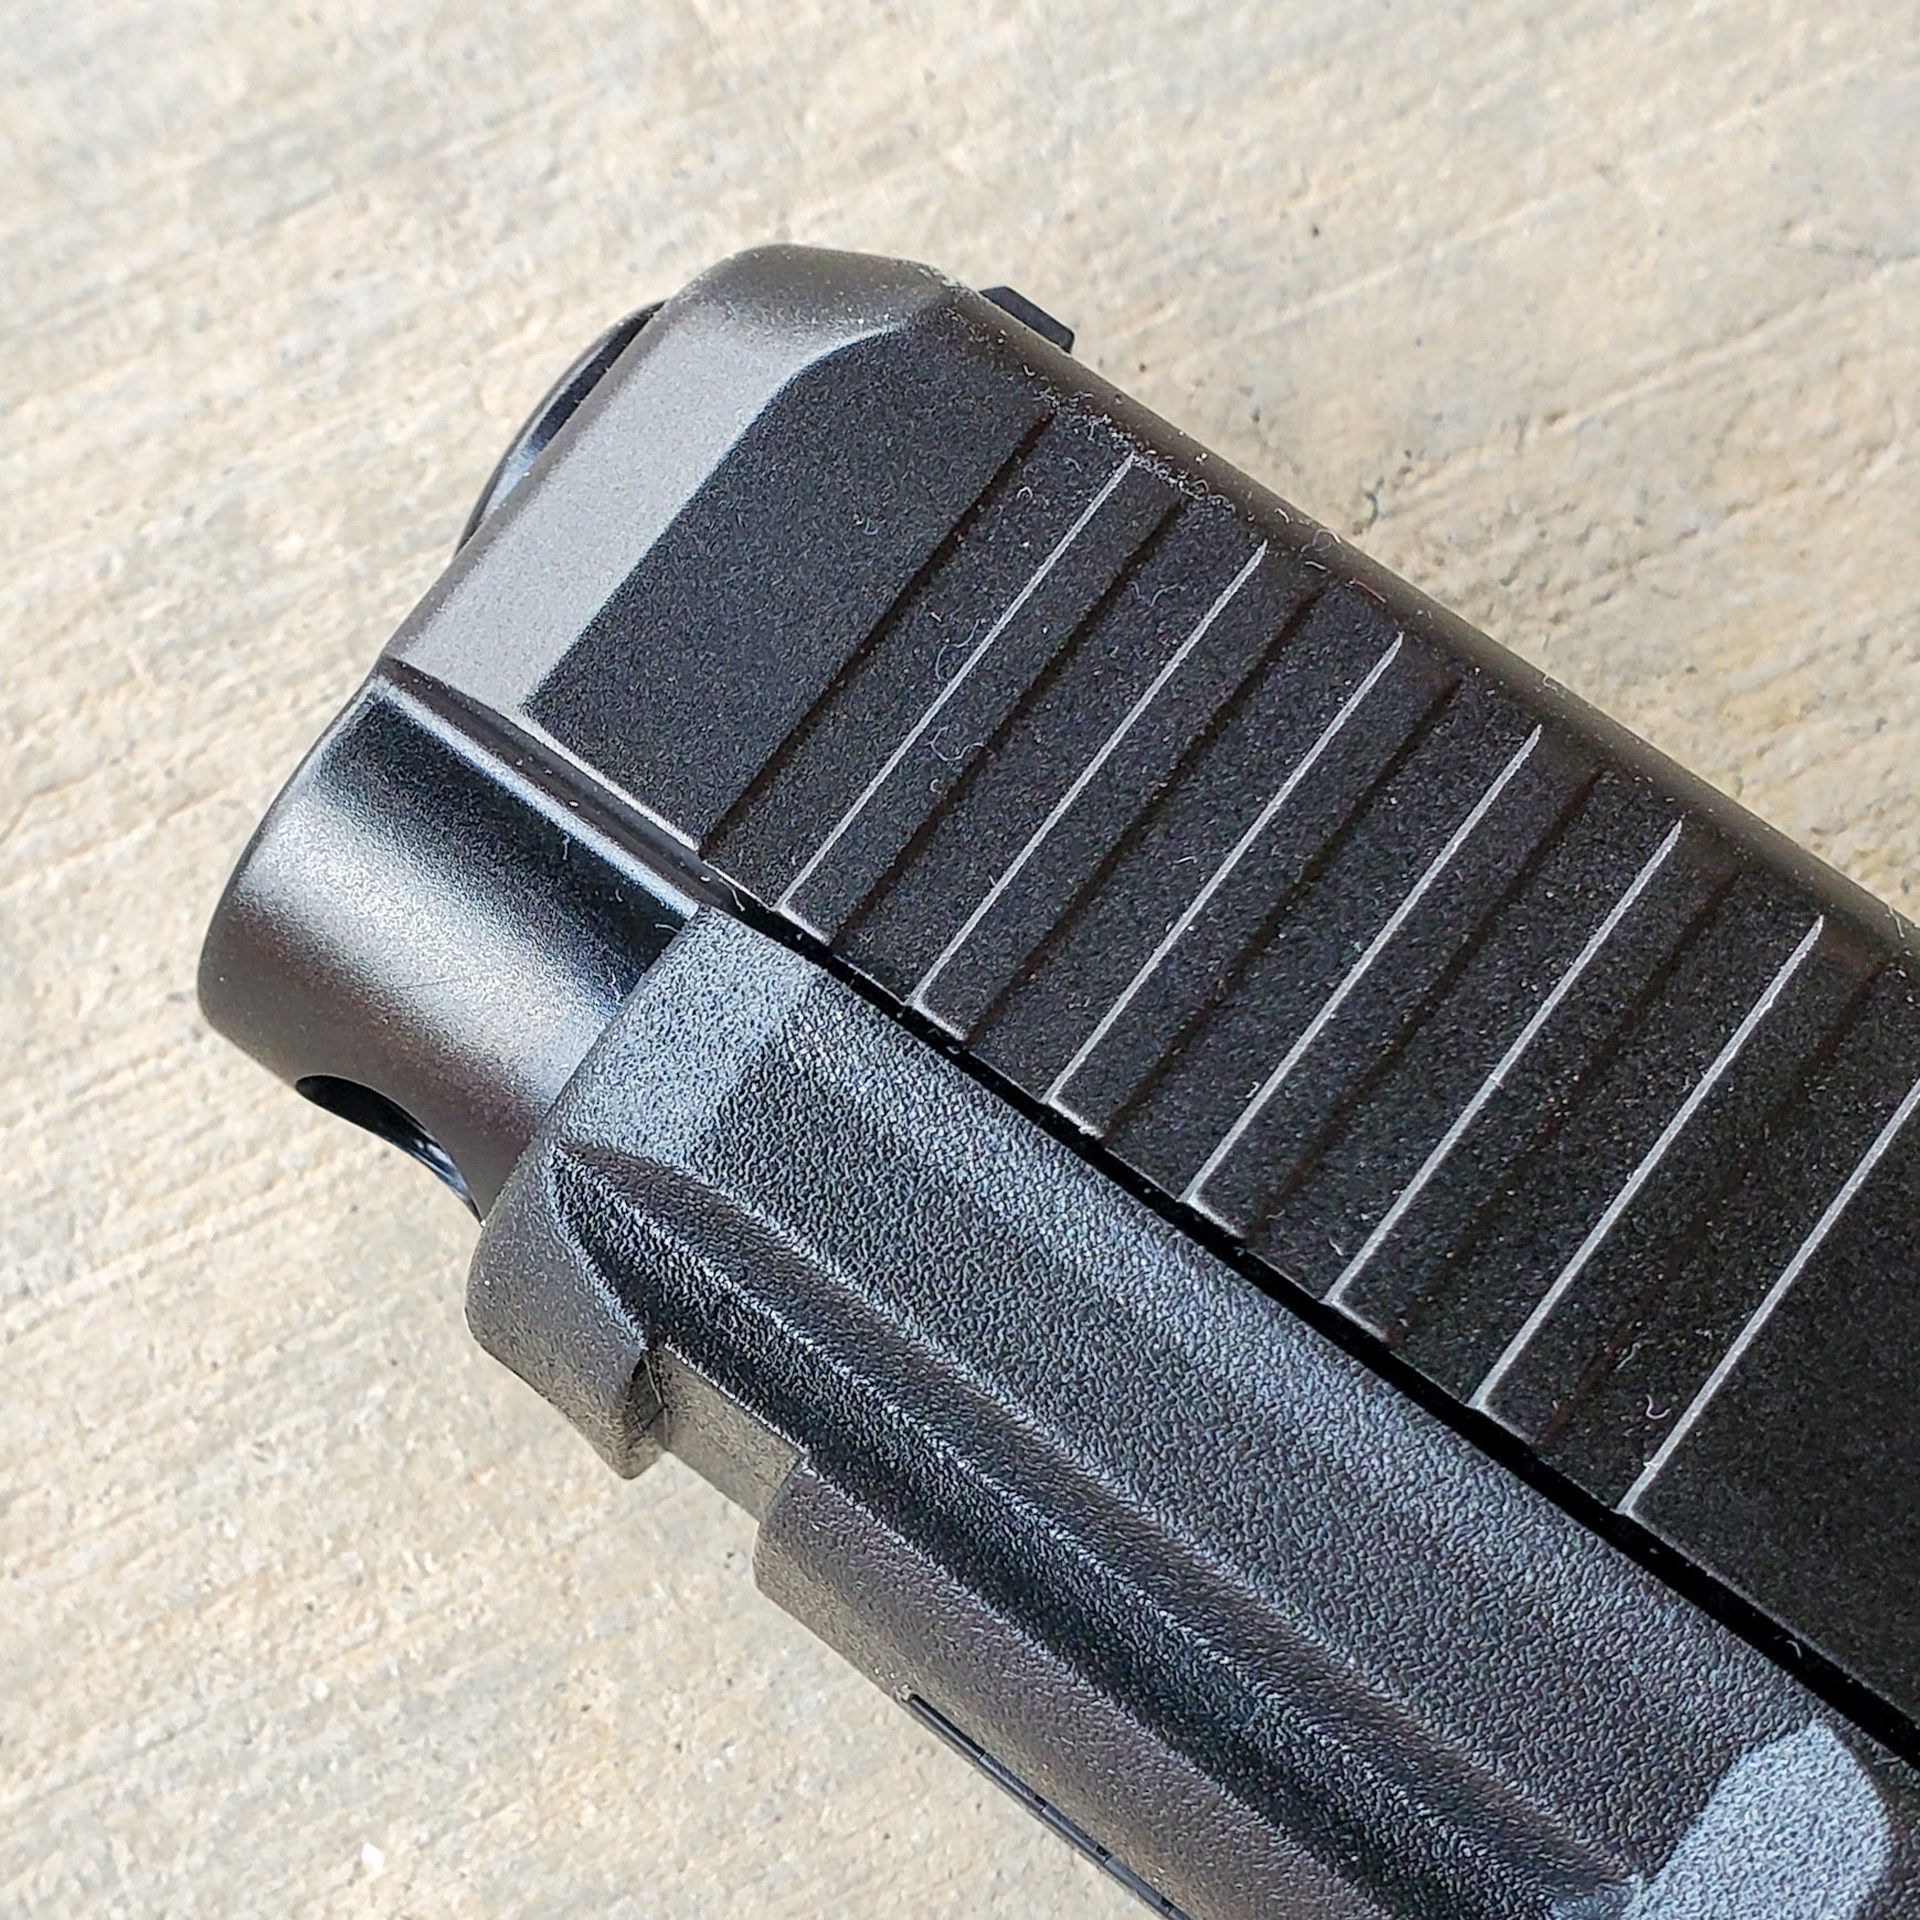 Glock 47 handgun pistol gun muzzle silde serrations accessory rail front bevel holster cut